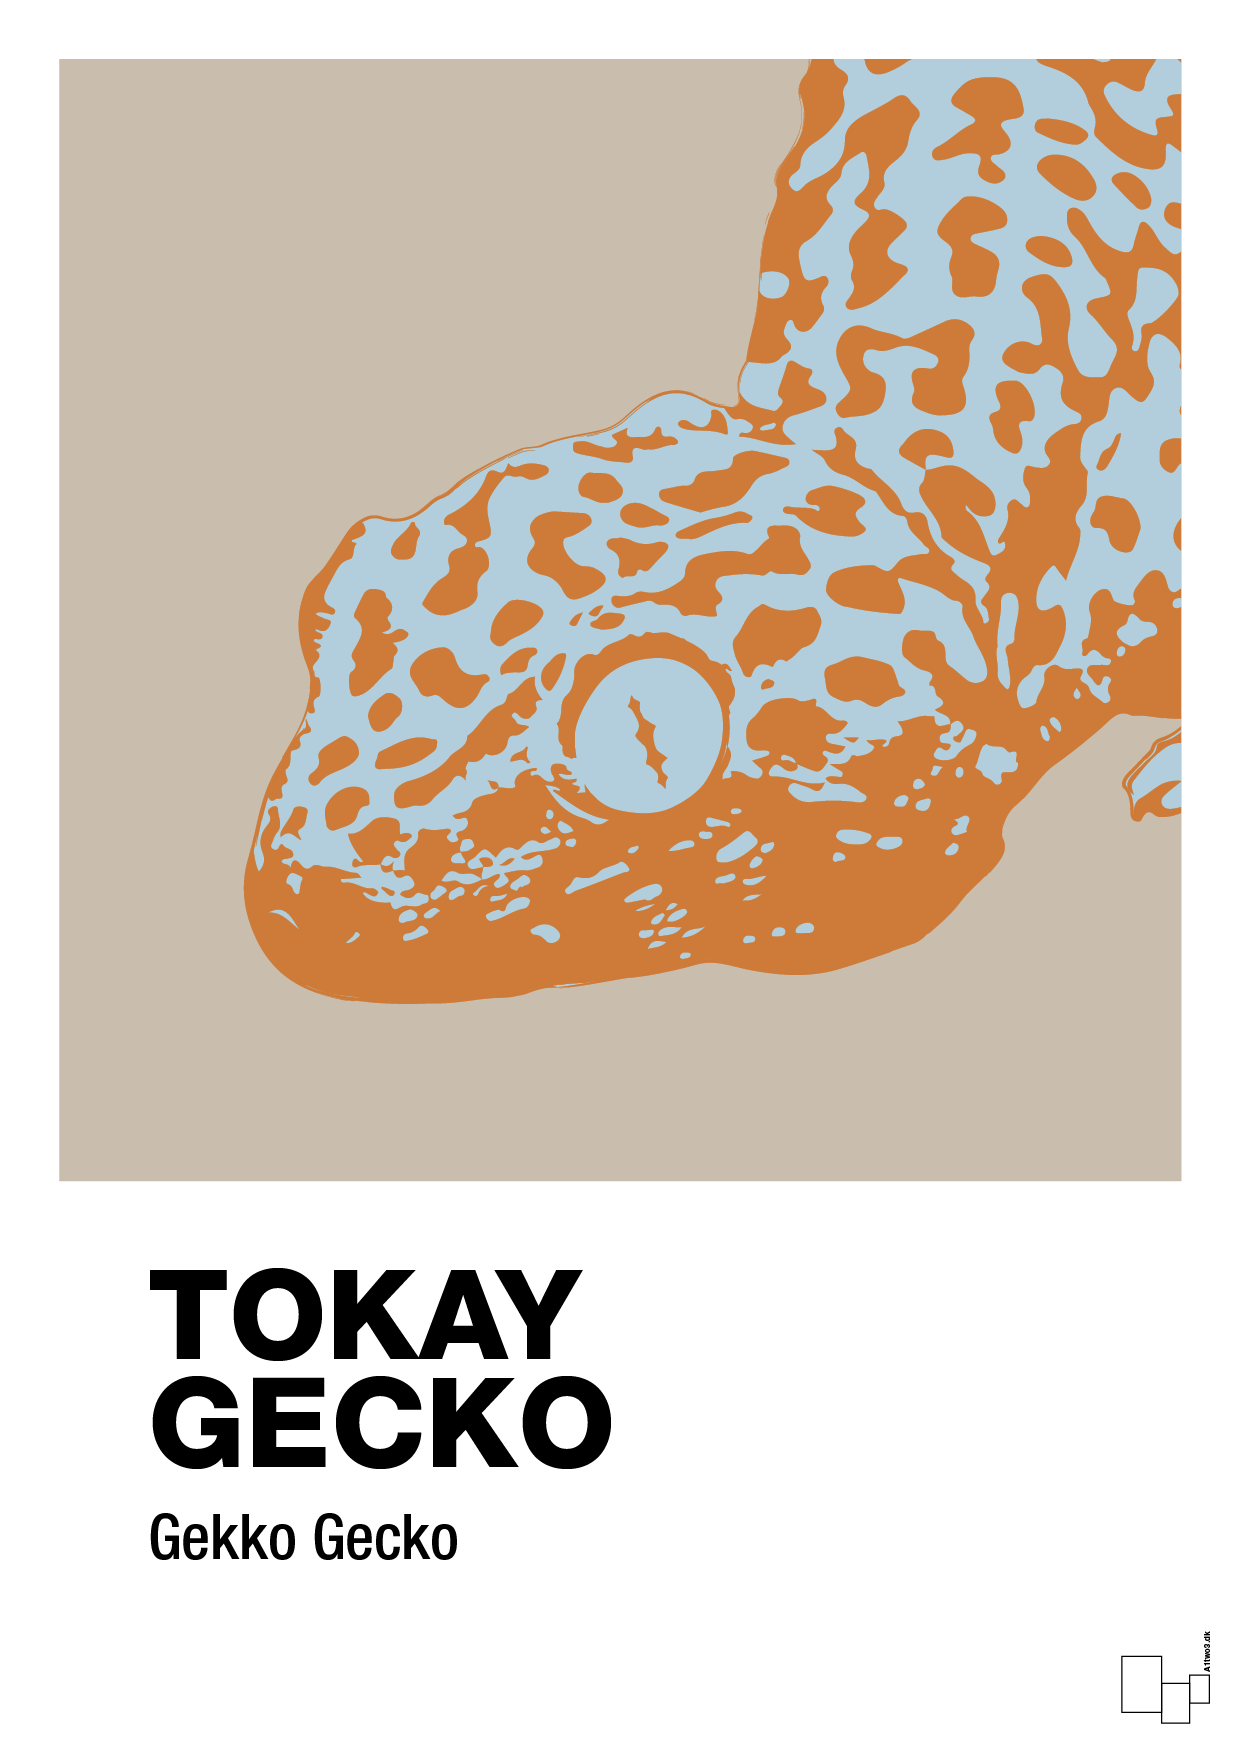 tokay gecko - Plakat med Videnskab i Creamy Mushroom